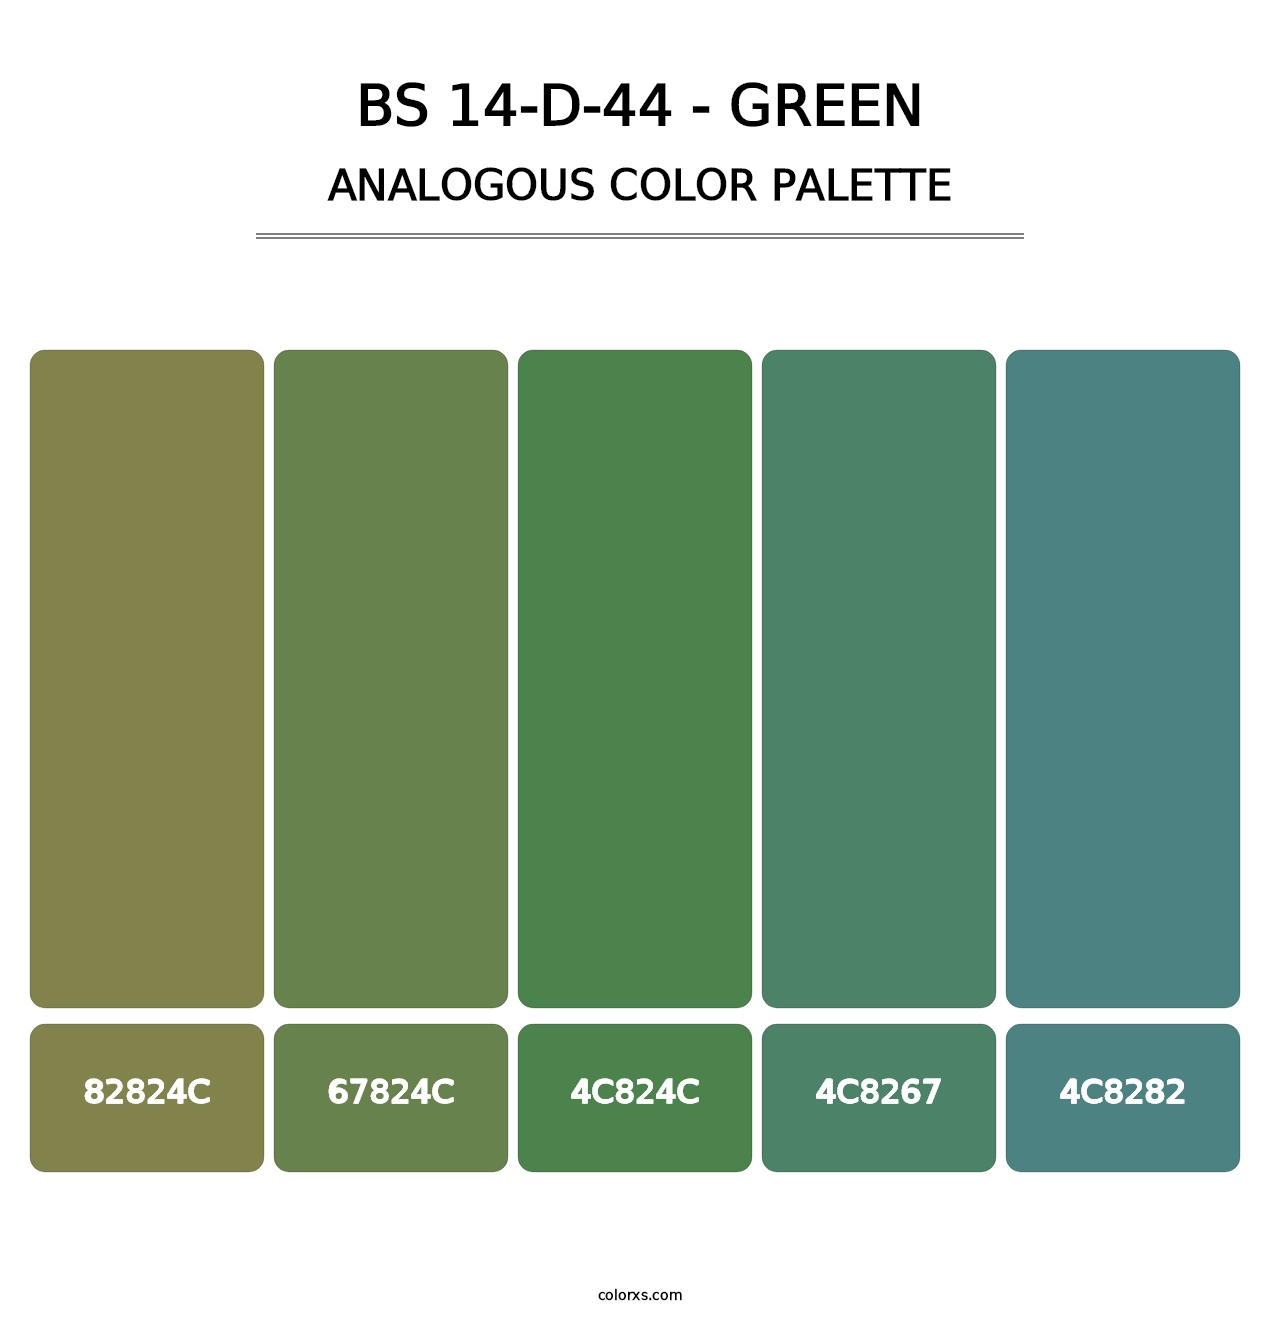 BS 14-D-44 - Green - Analogous Color Palette